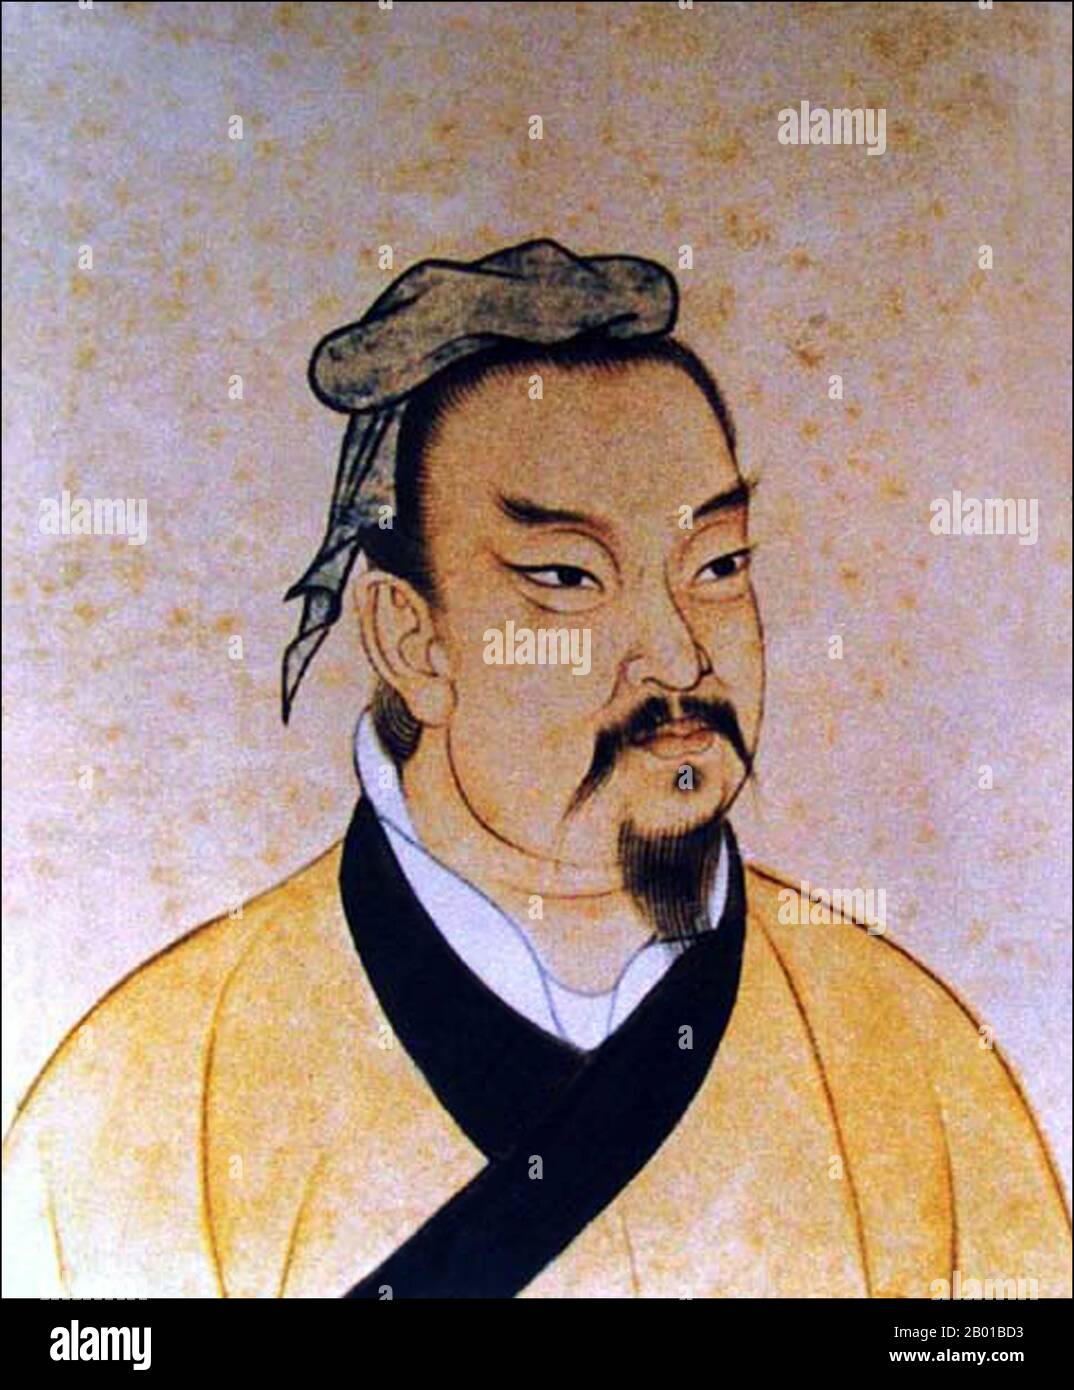 China: Sunzi oder Sun-Tzu (c. 544-496 v. Chr.), General, Militärstratege und Autor von „The Art of war“. Hängende Schriftrolle, Qing-Dynastie. Sun Tzu/Sunzi, Geburtsname Sun Wu und Höflichkeitsname Changqing, war ein alter chinesischer Militärgeneral, Stratege und Philosoph aus der östlichen Zhou-Zeit, von dem angenommen wird, dass er 'die Kunst des Krieges', ein einflussreiches altes chinesisches Buch über militärische Strategie, geschrieben hat. Sun Tzu hat sowohl als Autor von The Art of war als auch durch Legende einen bedeutenden Einfluss auf die asiatische und westliche Geschichte und Kultur gehabt. Stockfoto